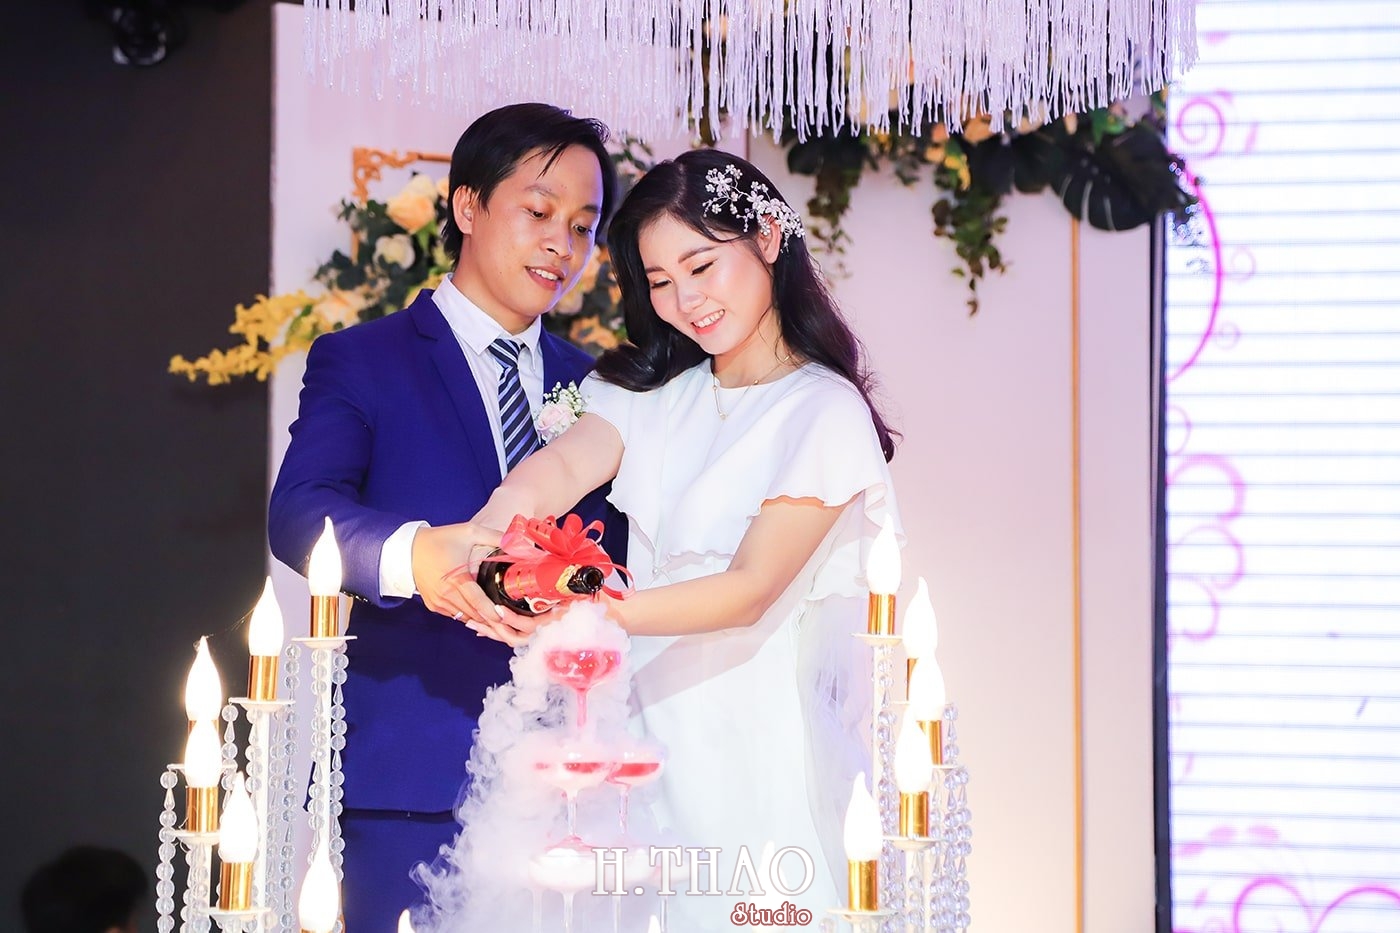 IMG 0934 min - Chụp hình tiệc cưới giá rẻ chất lượng tại Tp.HCM – HThao Studio